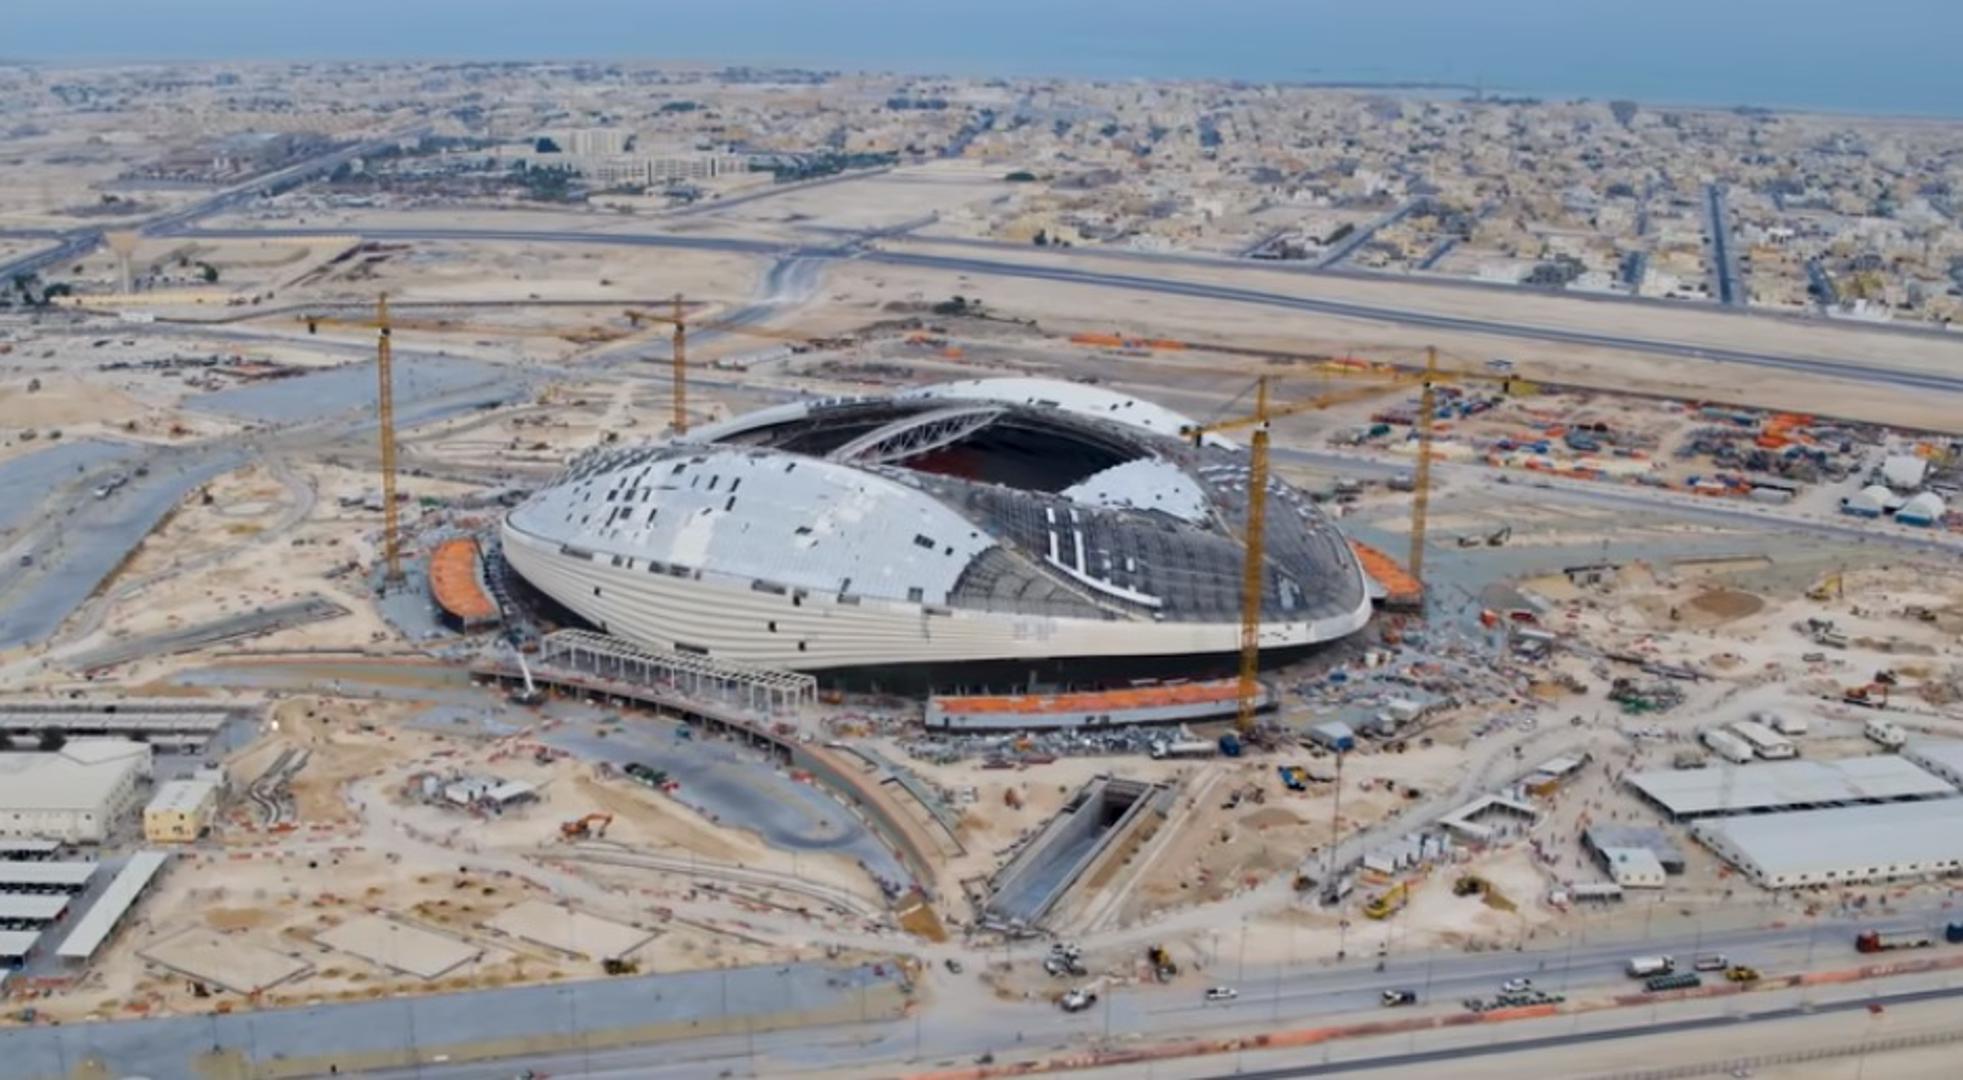 Nakon što je Katar dobio organizaciju Svjetskog nogometnog prvenstva 2022. godine, domaćini su obećali da će izgraditi najmodernije stadione na svijetu

